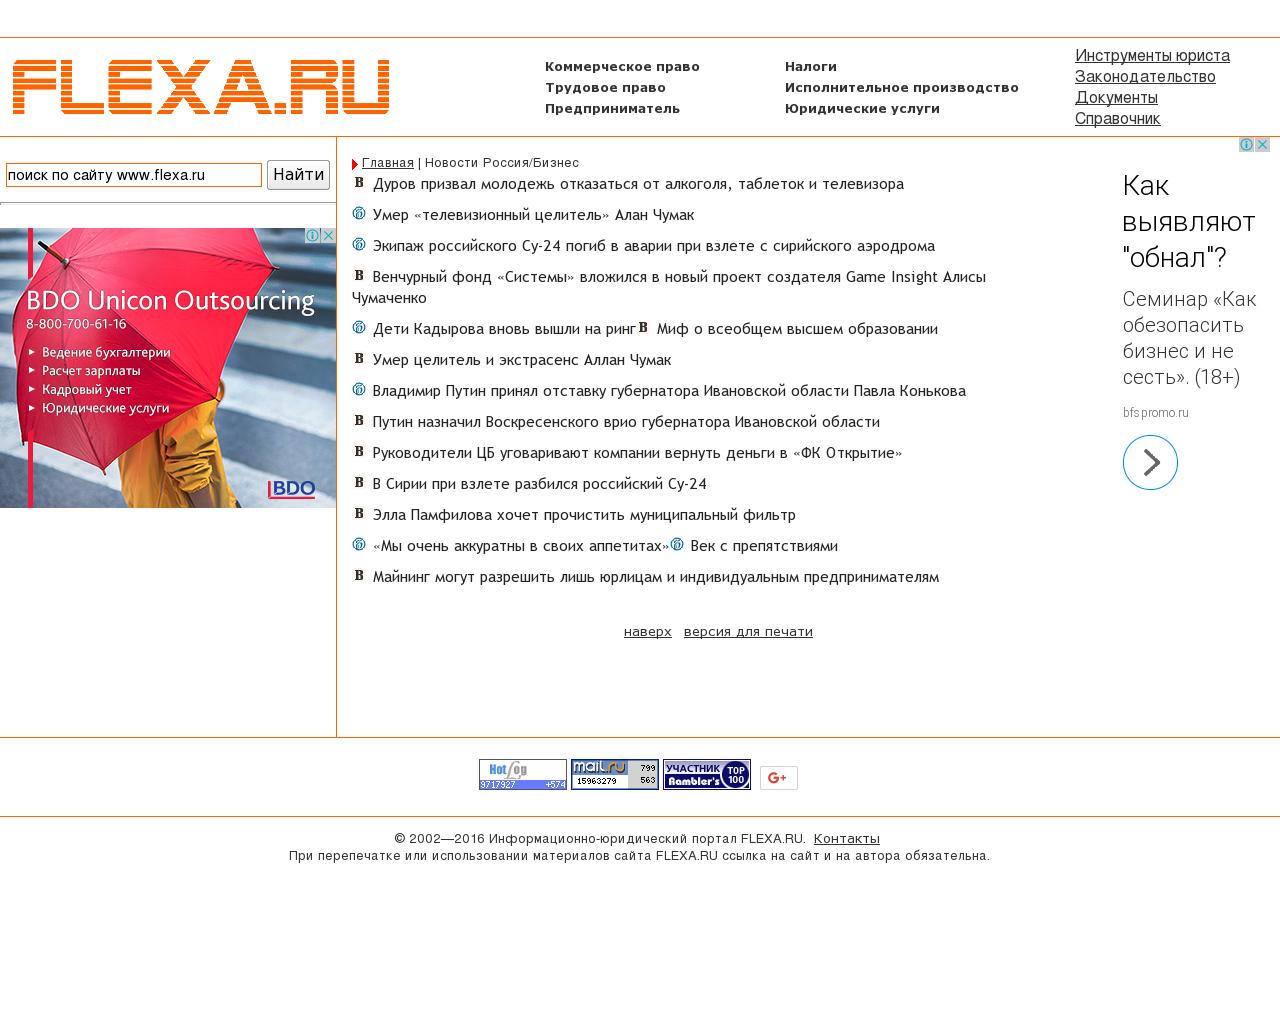 Изображение сайта flexa.ru в разрешении 1280x1024